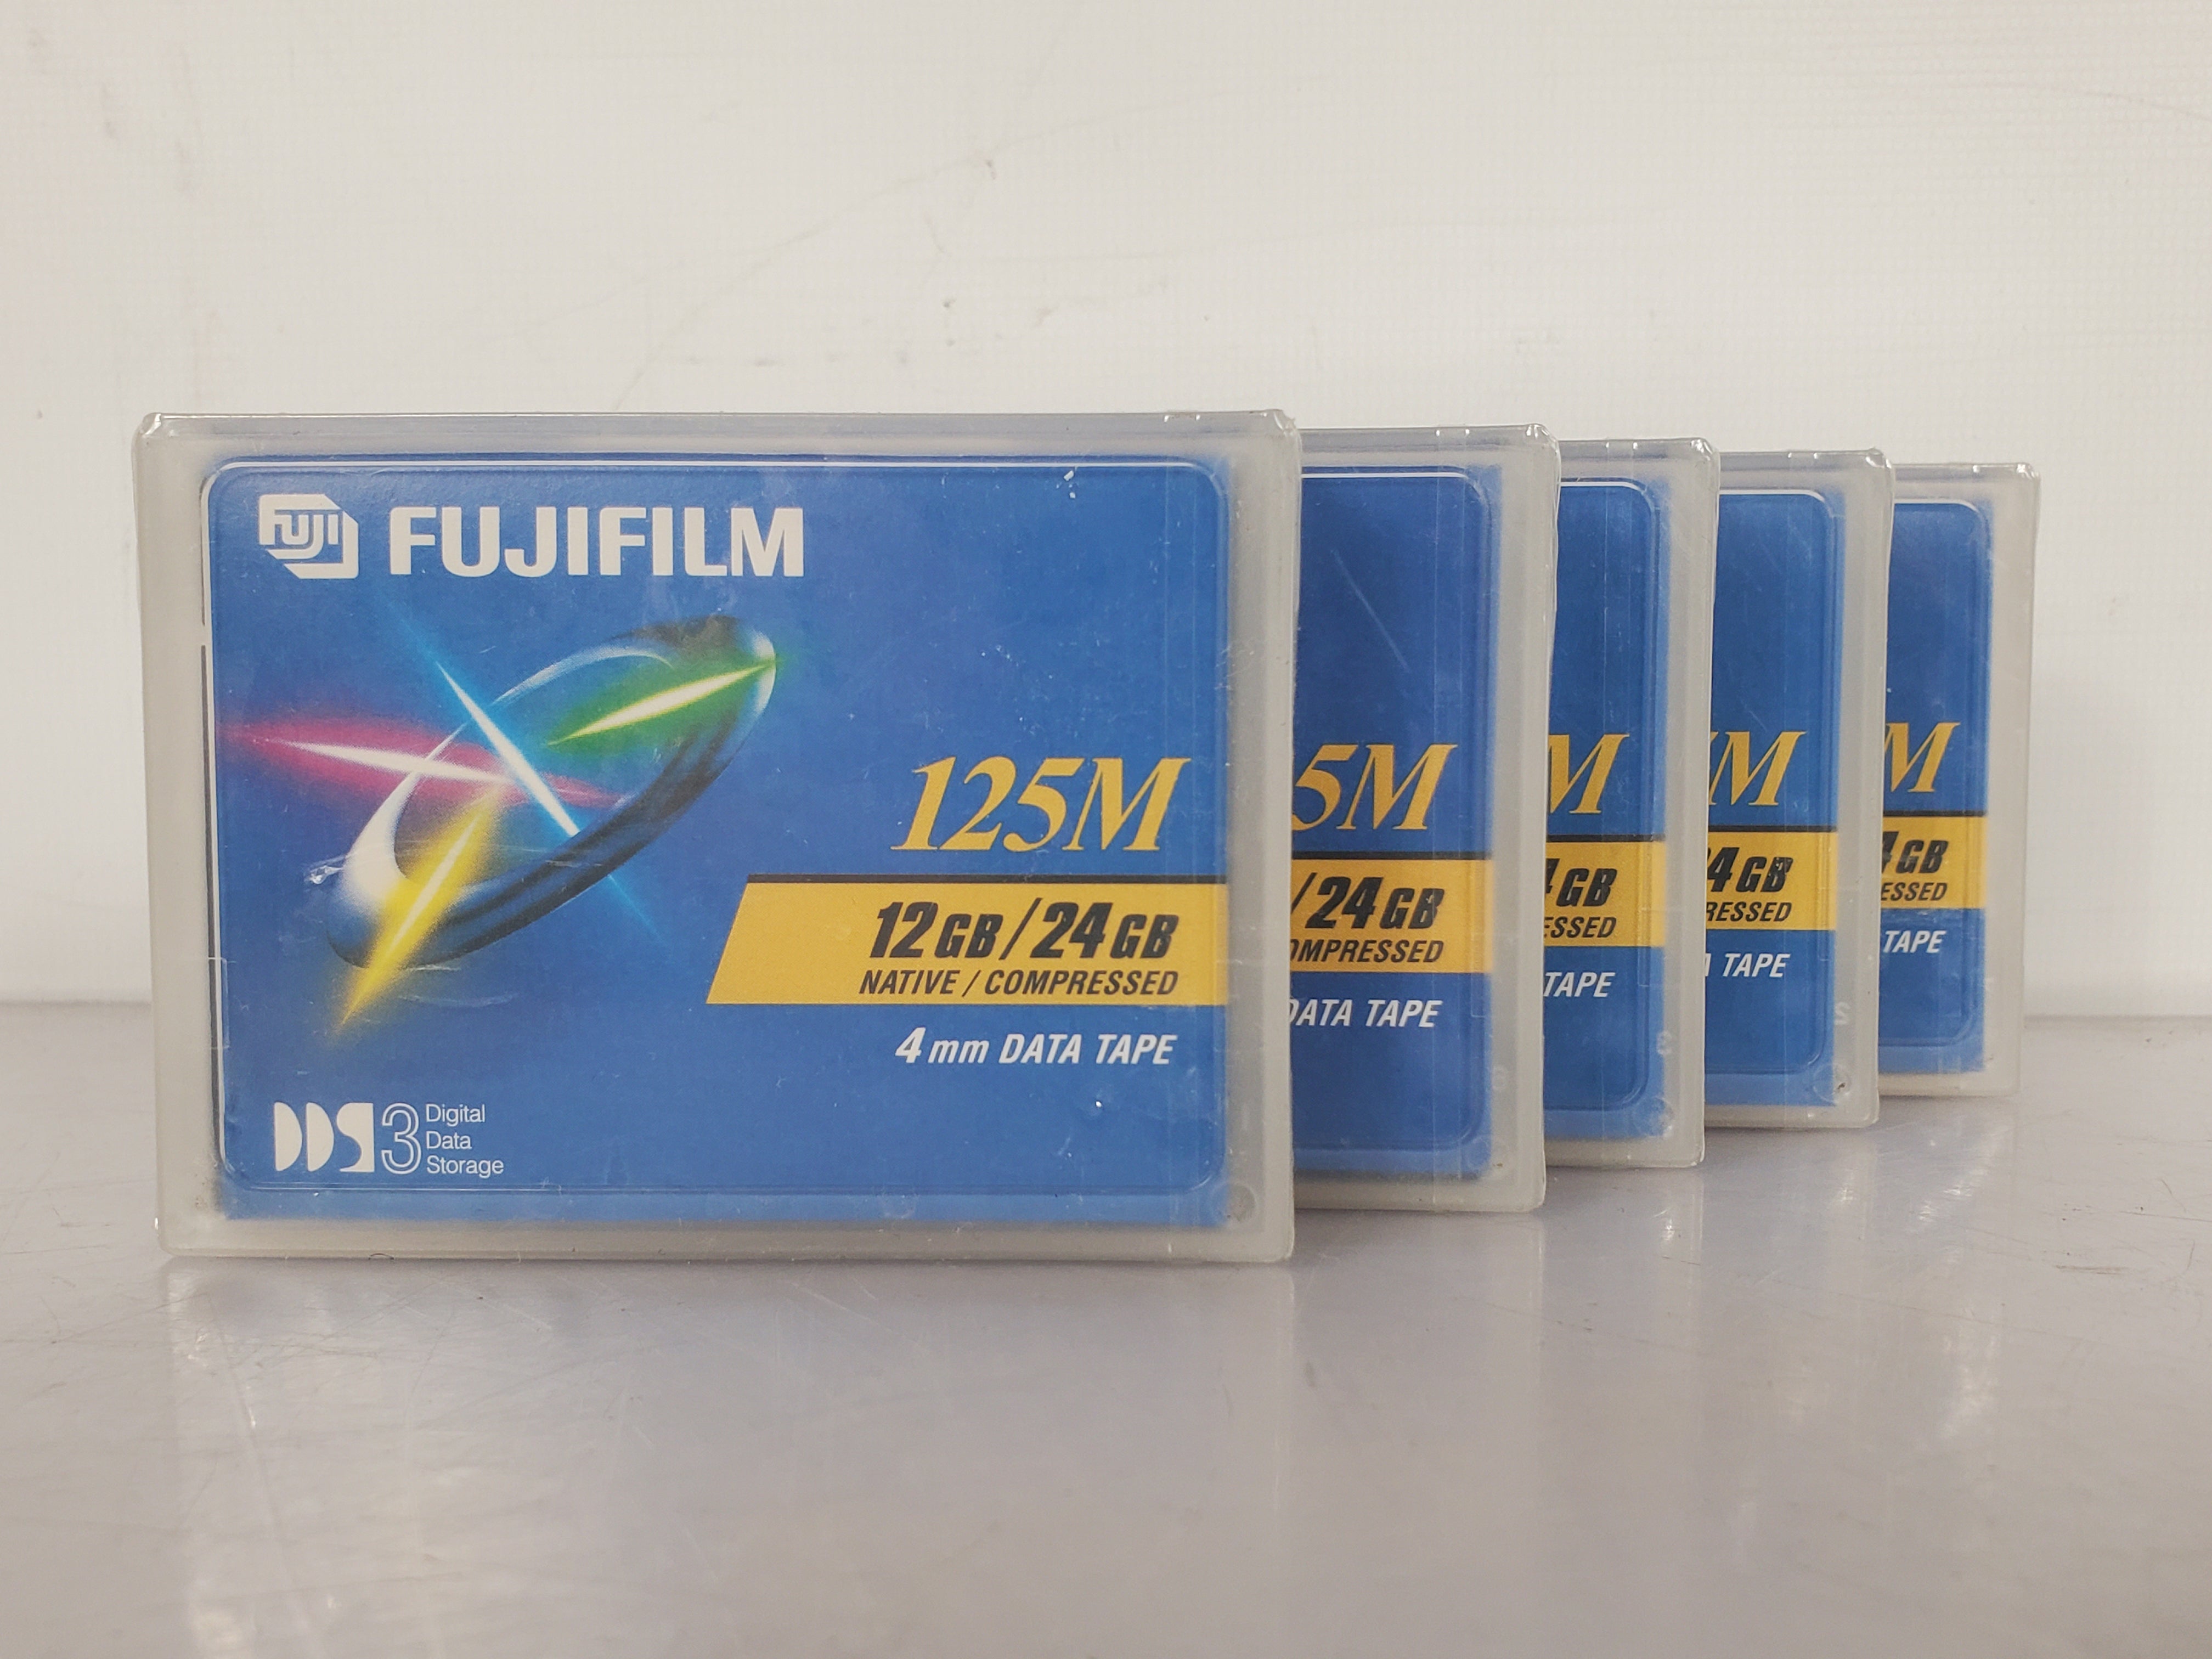 Lot of 5 Fujifilm DDS3 125M 12GB/24GB 4mm Data Tape